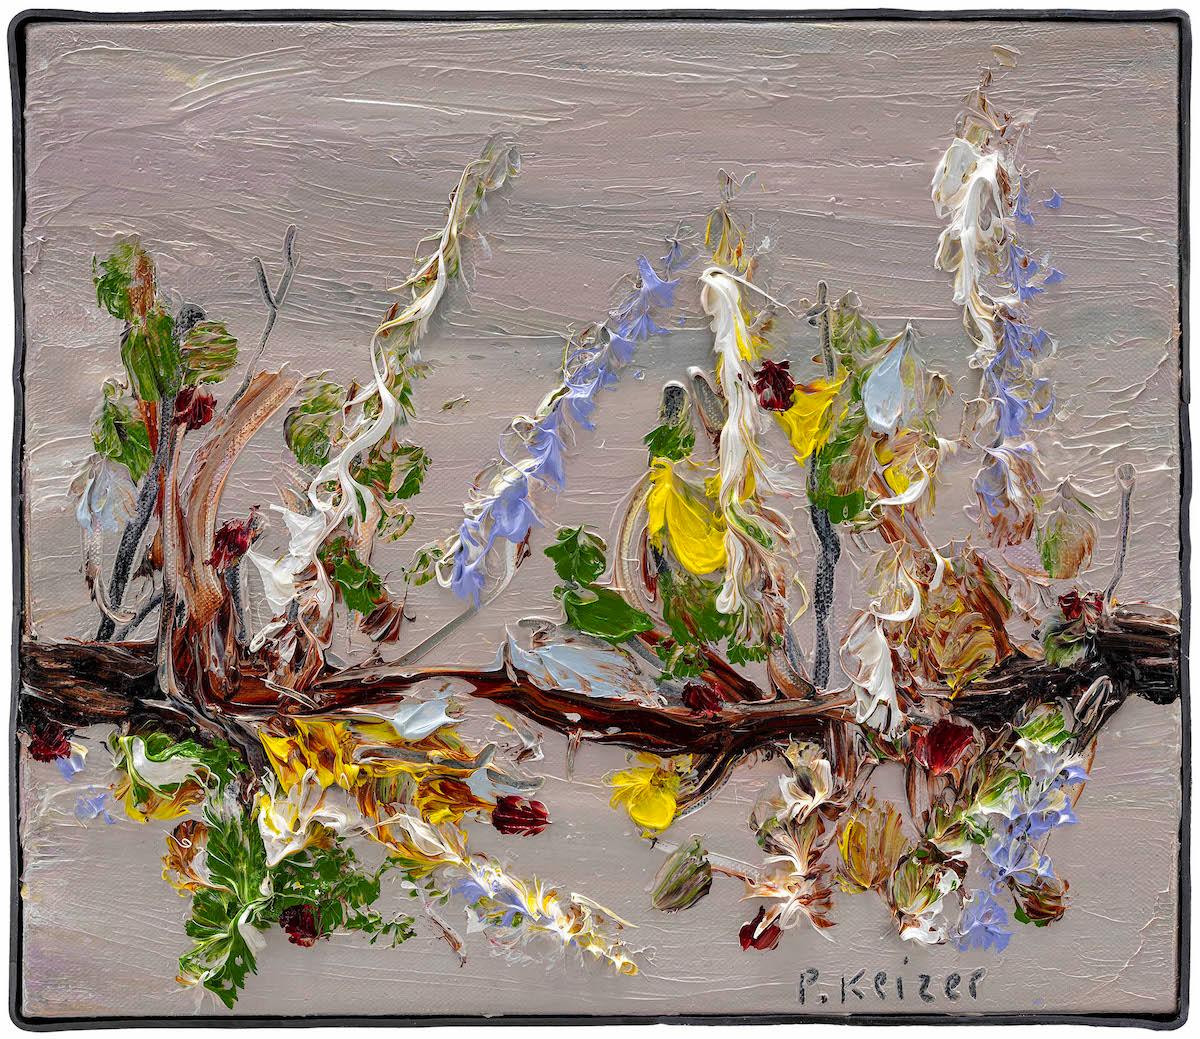 À la fois magnifique et absurde, l'œuvre de Peter Keizer évoque un monde où seuls les sentiments positifs surgissent : plein de fleurs, d'arbres, de paysages montagneux..  et les chiens. Ses thèmes sont étroitement liés aux souvenirs d'enfance ;